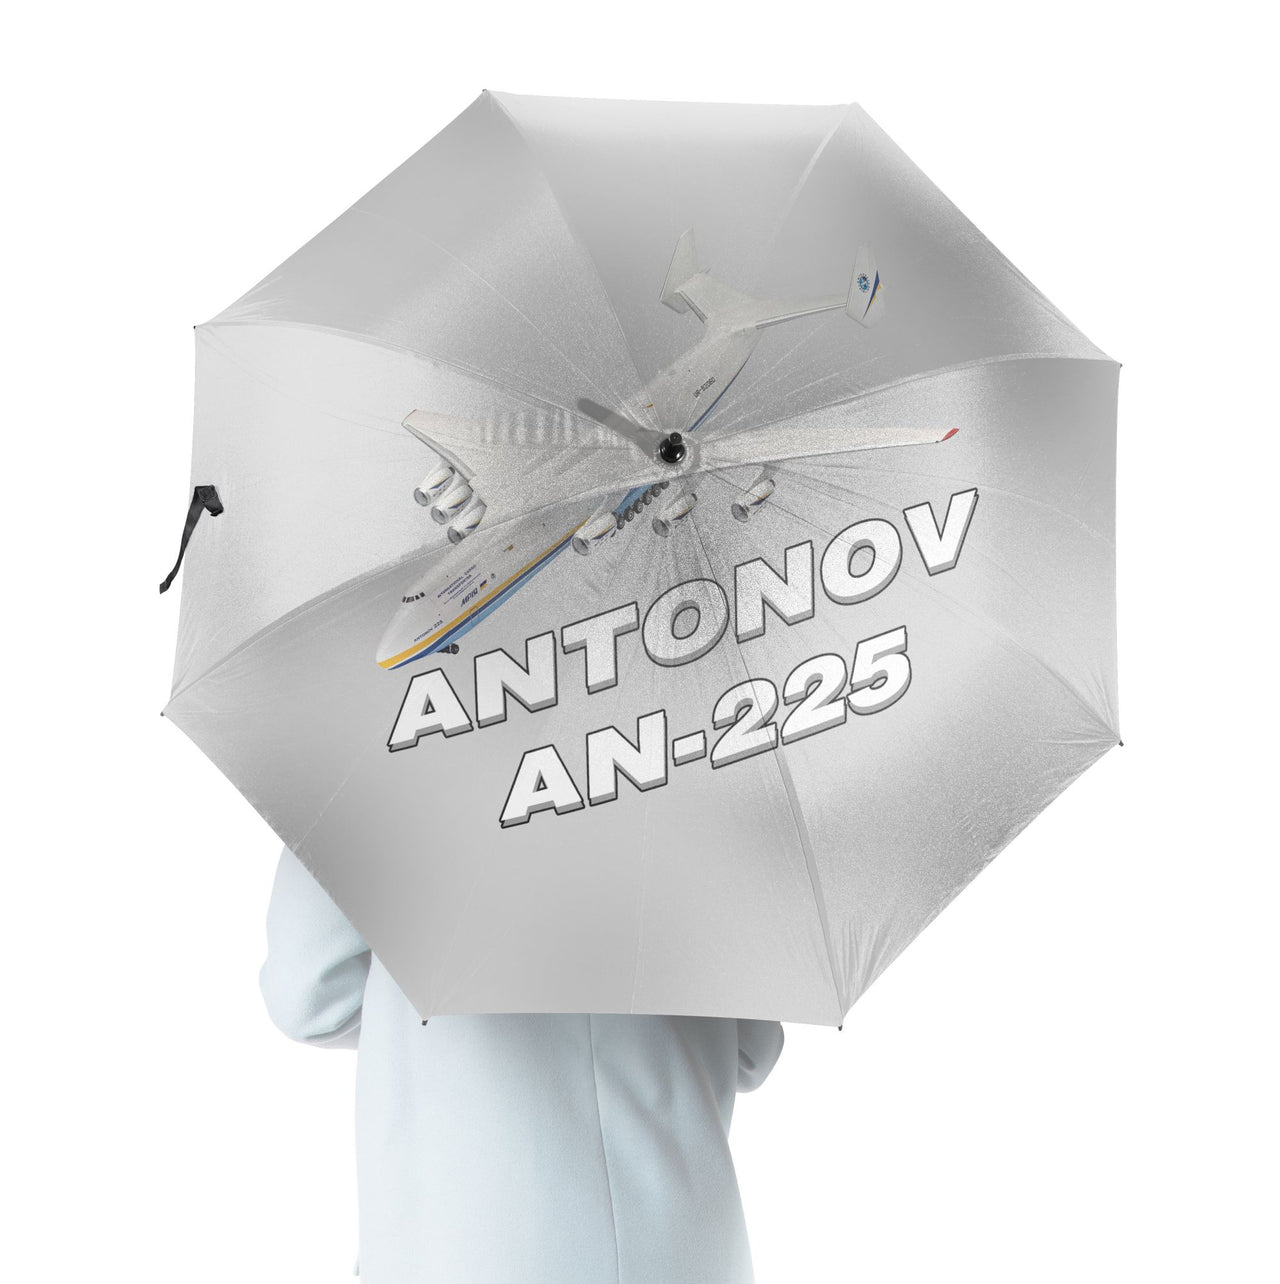 Antonov AN-225 (12) Designed Umbrella